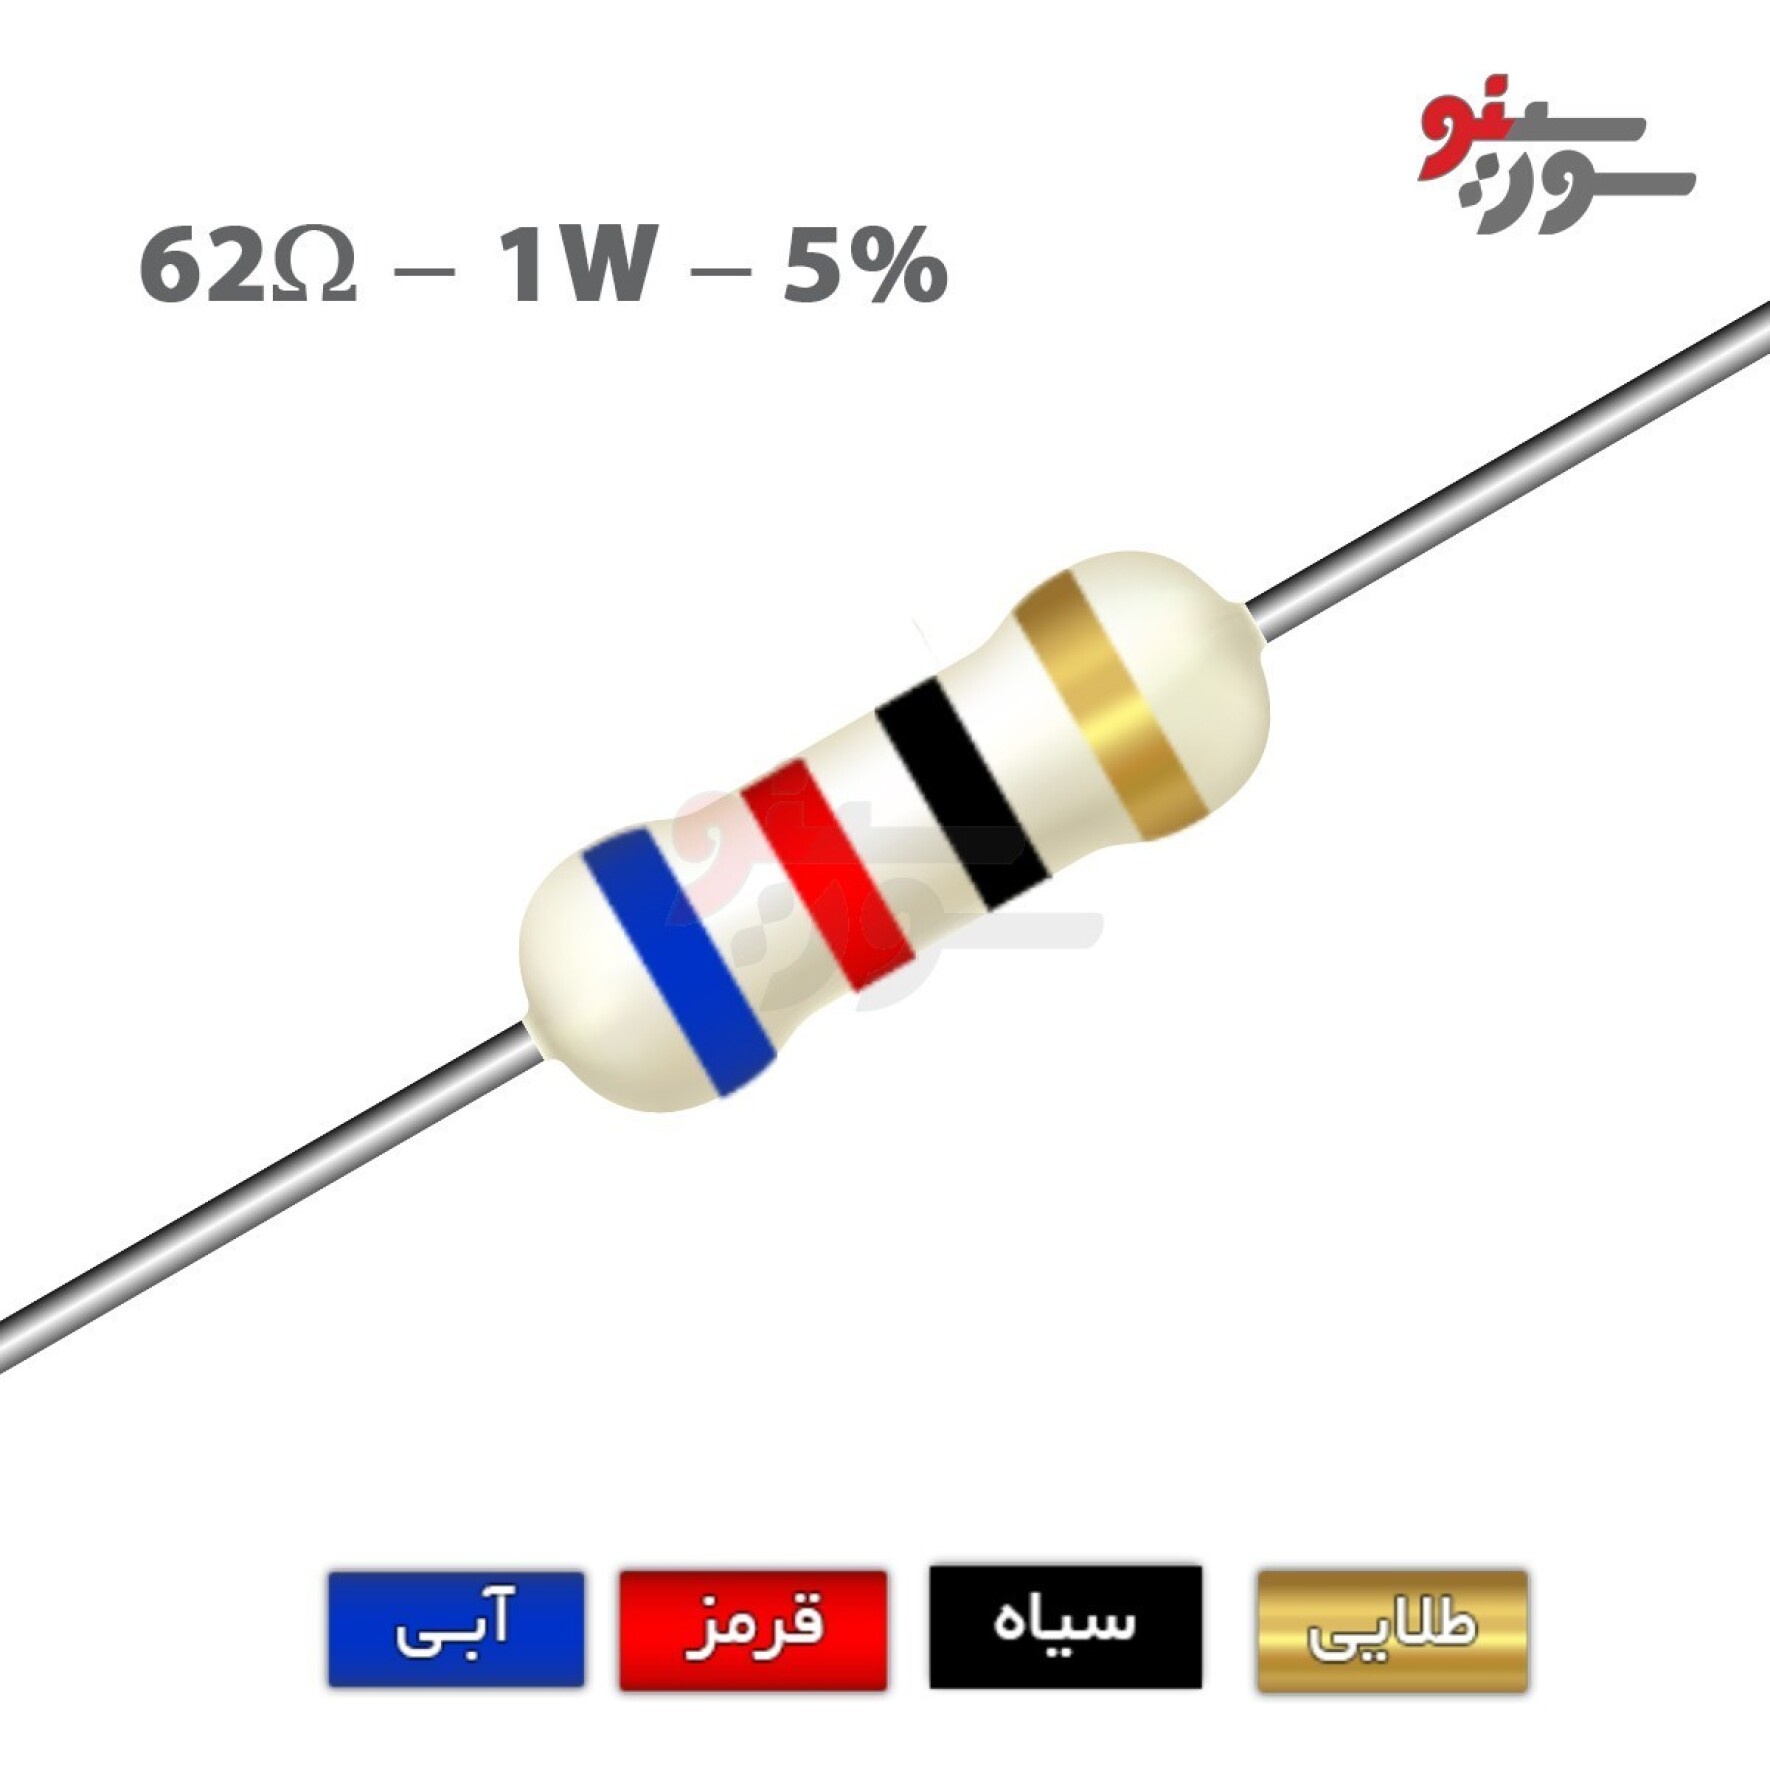 مقاومت 62 اهم 1 وات (62R-1W-5%)